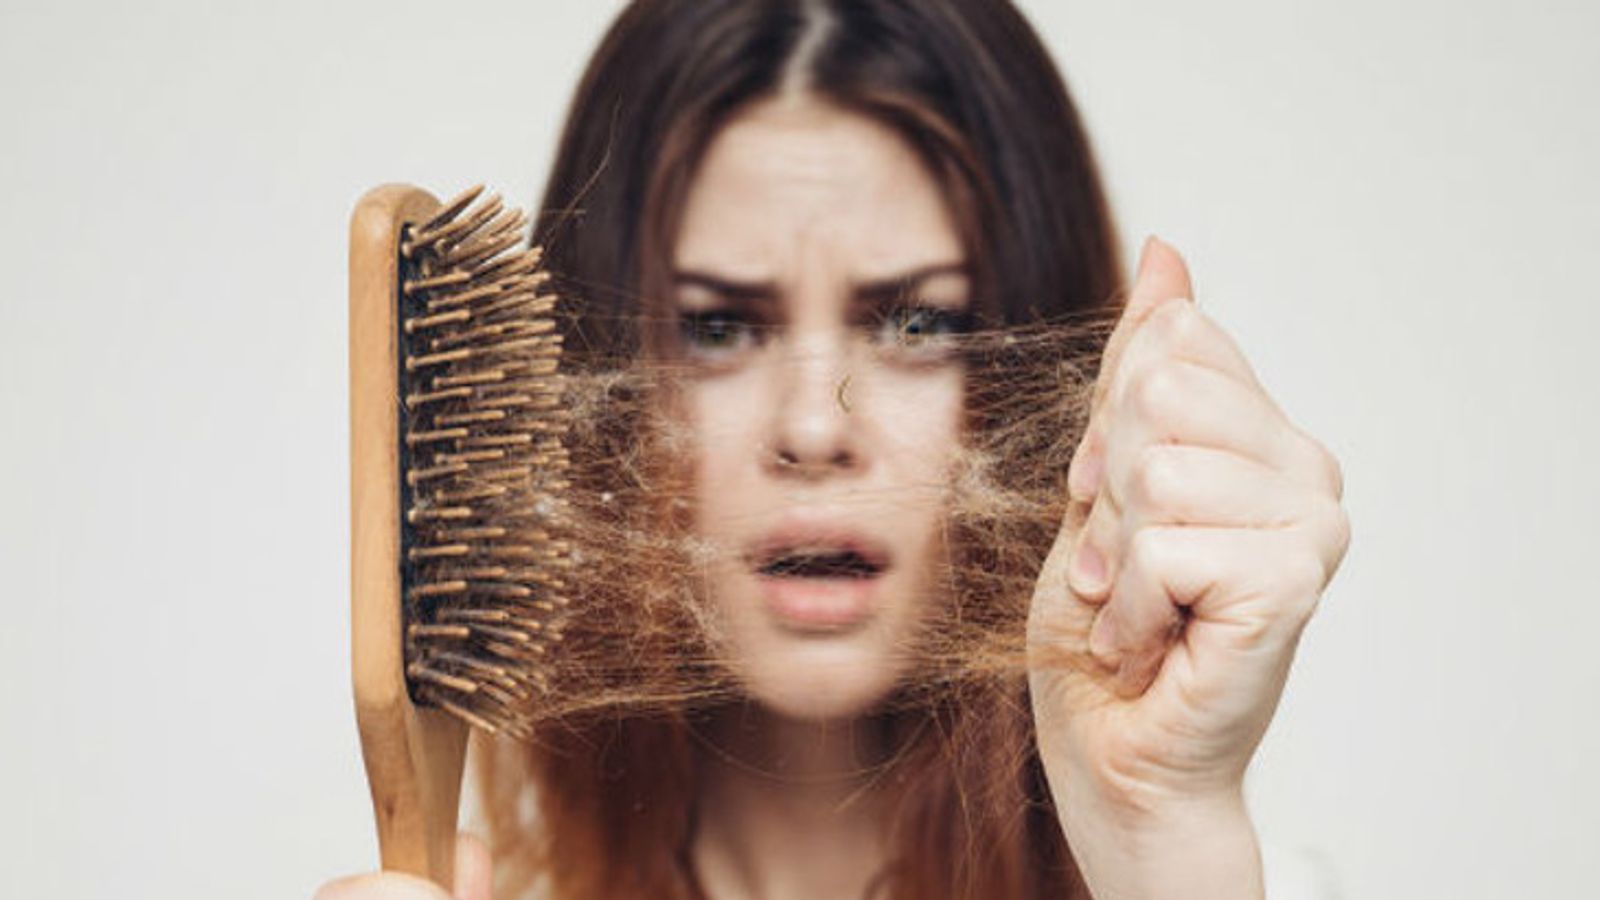 Rụng tóc hậu Covid-19: Tóc là nét đẹp quan trọng của con người, nhưng rụng tóc hậu Covid-19 đang gây ra nhiều lo lắng cho chúng ta. Hãy xem các hình ảnh liên quan để hiểu rõ nguyên nhân và cách phòng tránh rụng tóc hiệu quả nhất.